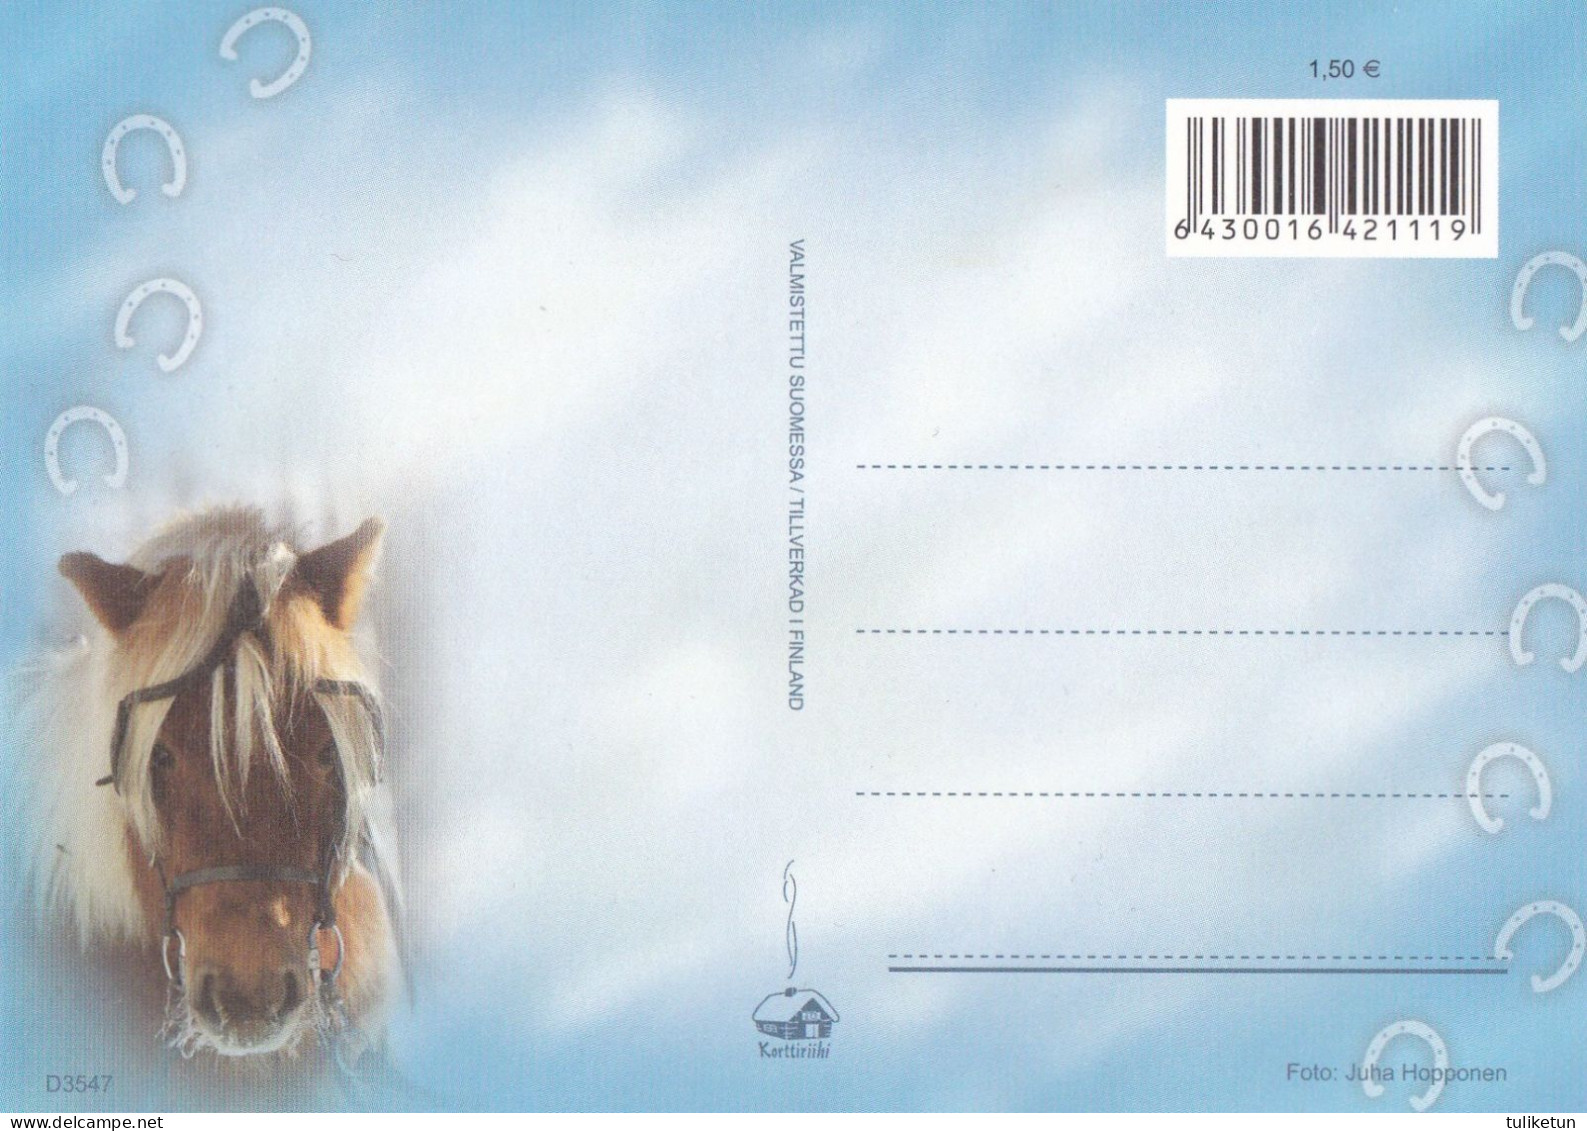 Horse - Cheval - Paard - Pferd - Cavallo - Cavalo - Caballo - Häst - Korttiriihi - Finland - Horses